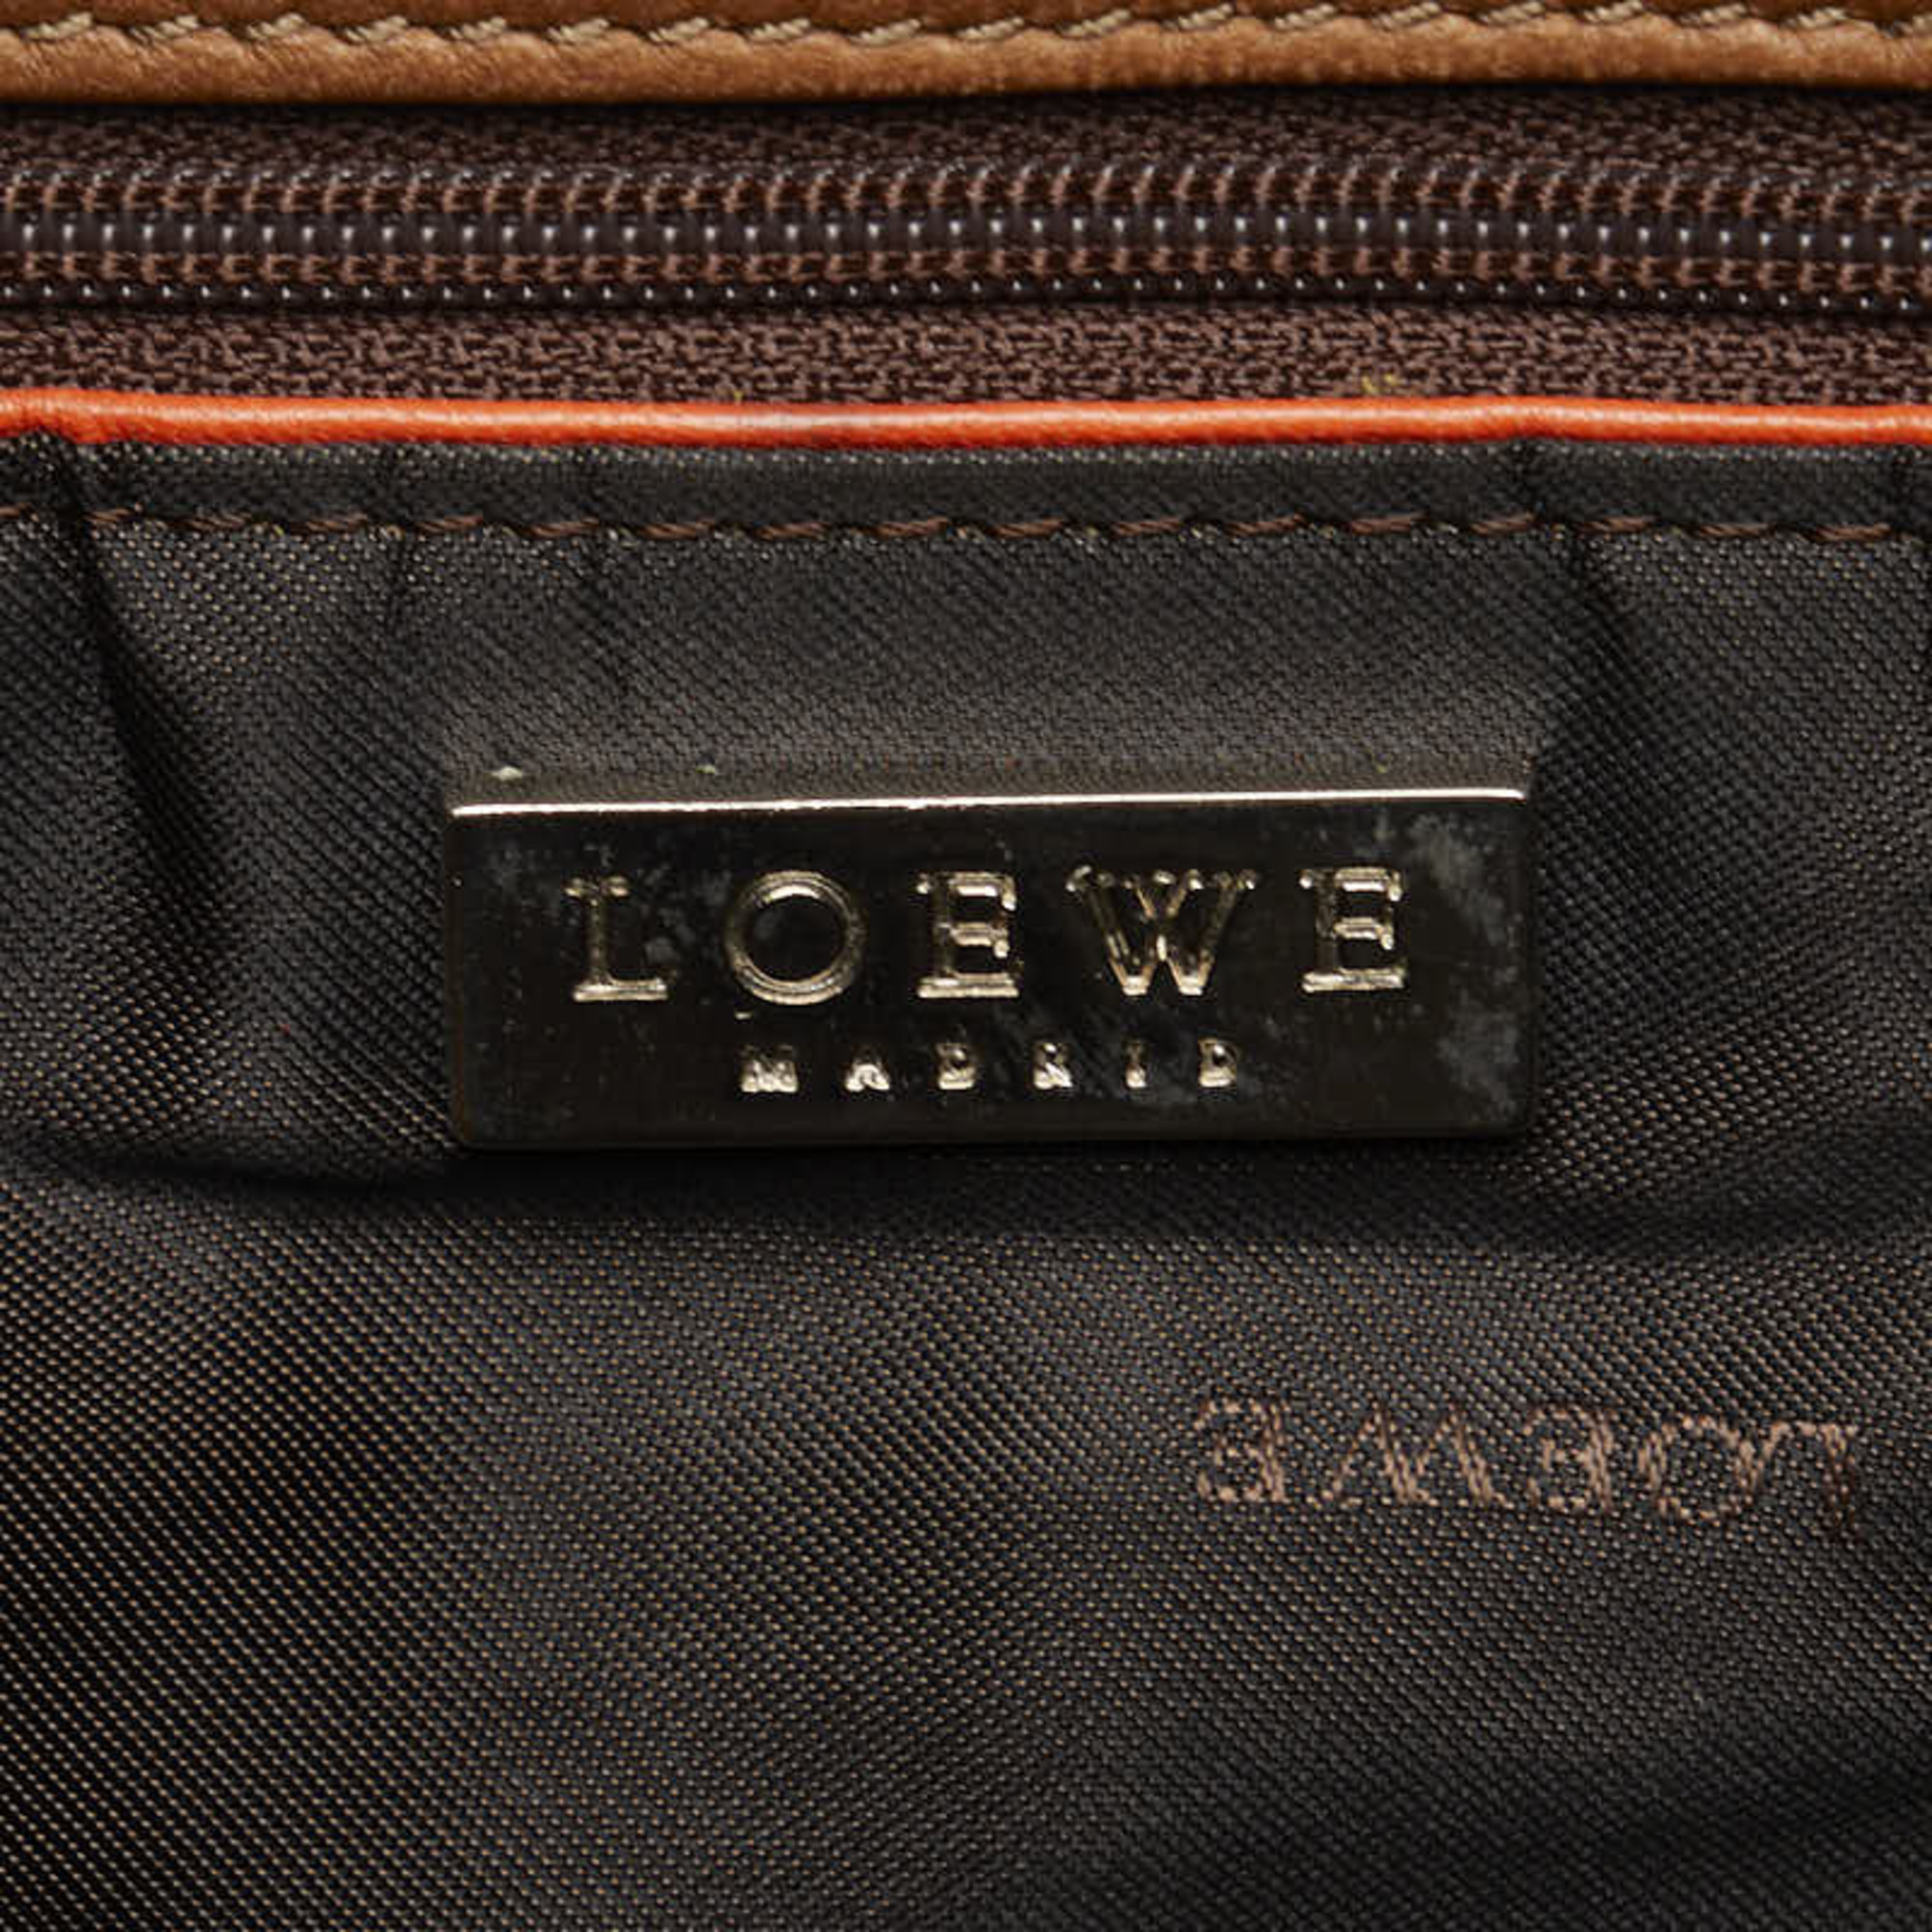 LOEWE Shoulder Bag Tote Brown Orange Leather Ladies